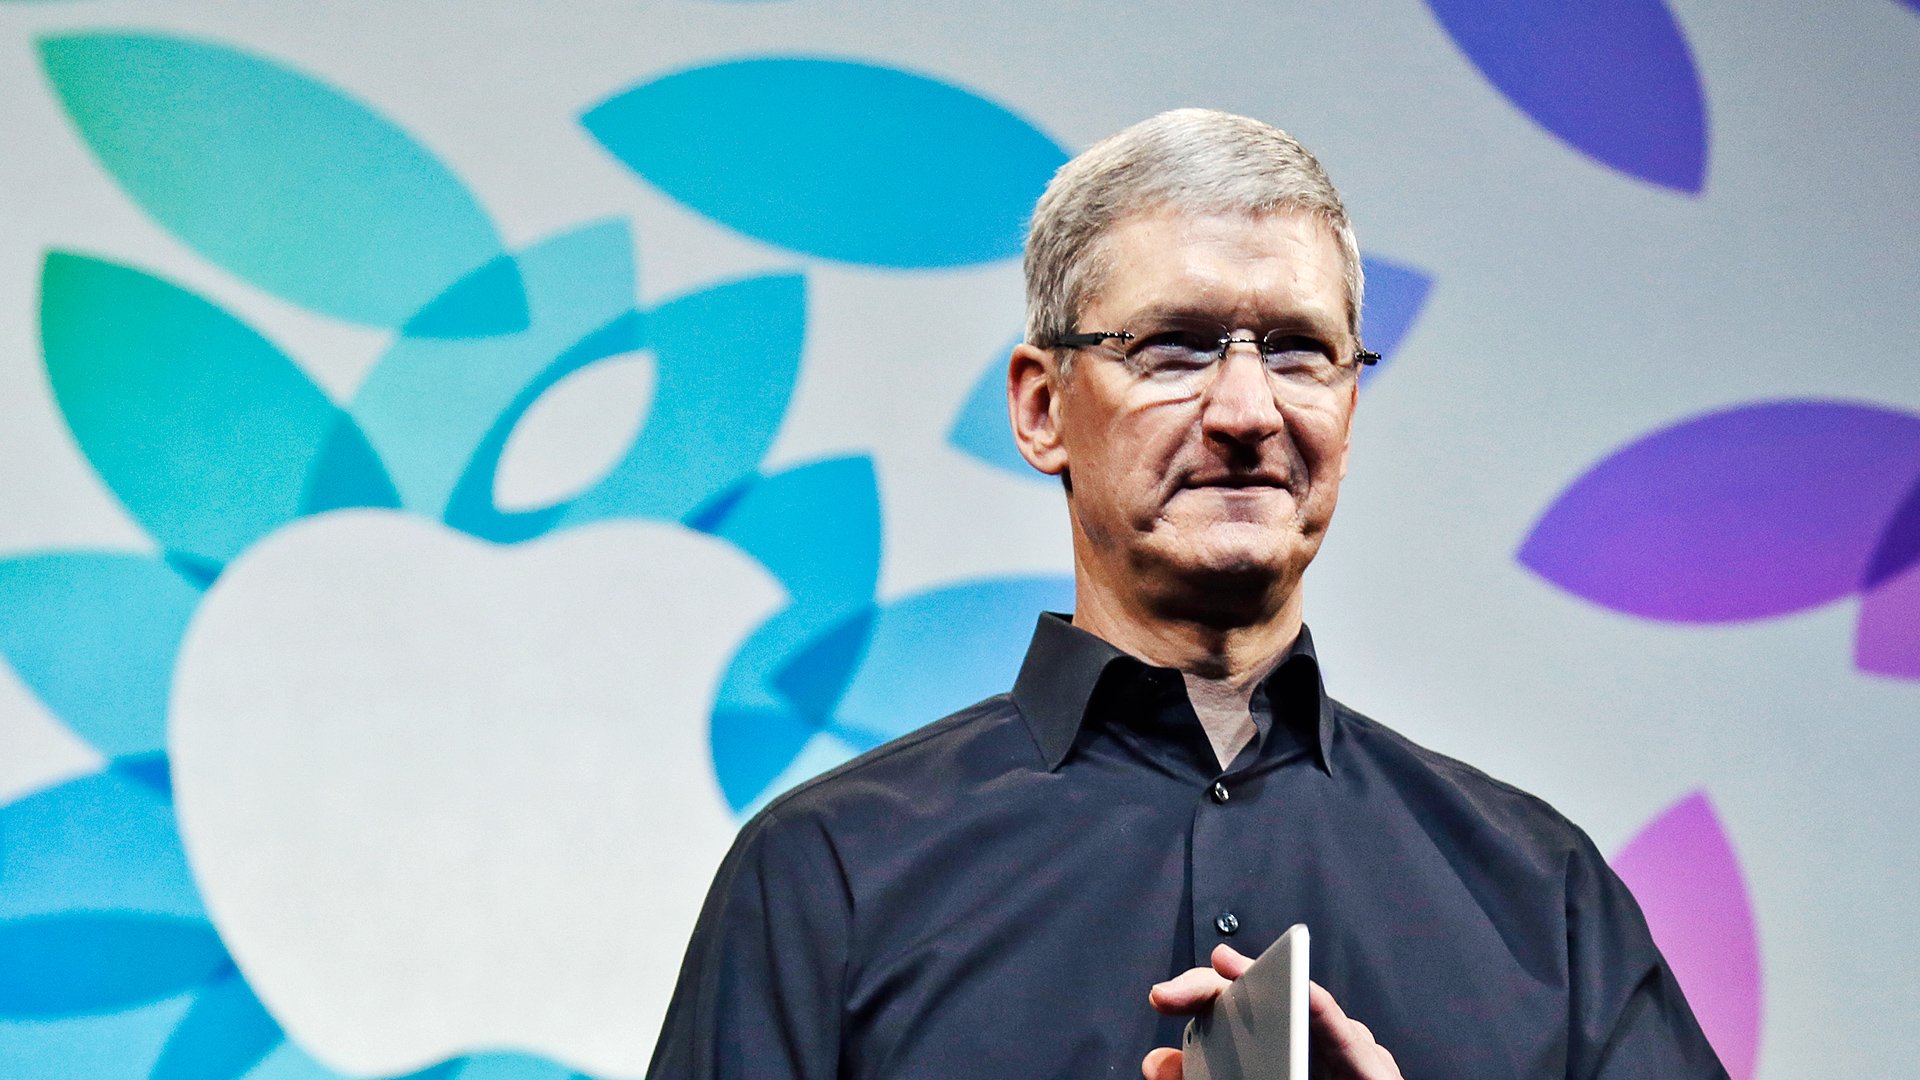 Hãy cùng đón xem hình ảnh về Tim Cook - người đứng đầu tập đoàn công nghệ nổi tiếng Apple và nhật báo Time đánh giá là một trong những nhân vật quyền lực nhất thế giới. Với phong cách lãnh đạo táo bạo và sáng suốt, Tim Cook đã đưa Apple vượt qua nhiều thử thách và tiến đến thành công lớn.